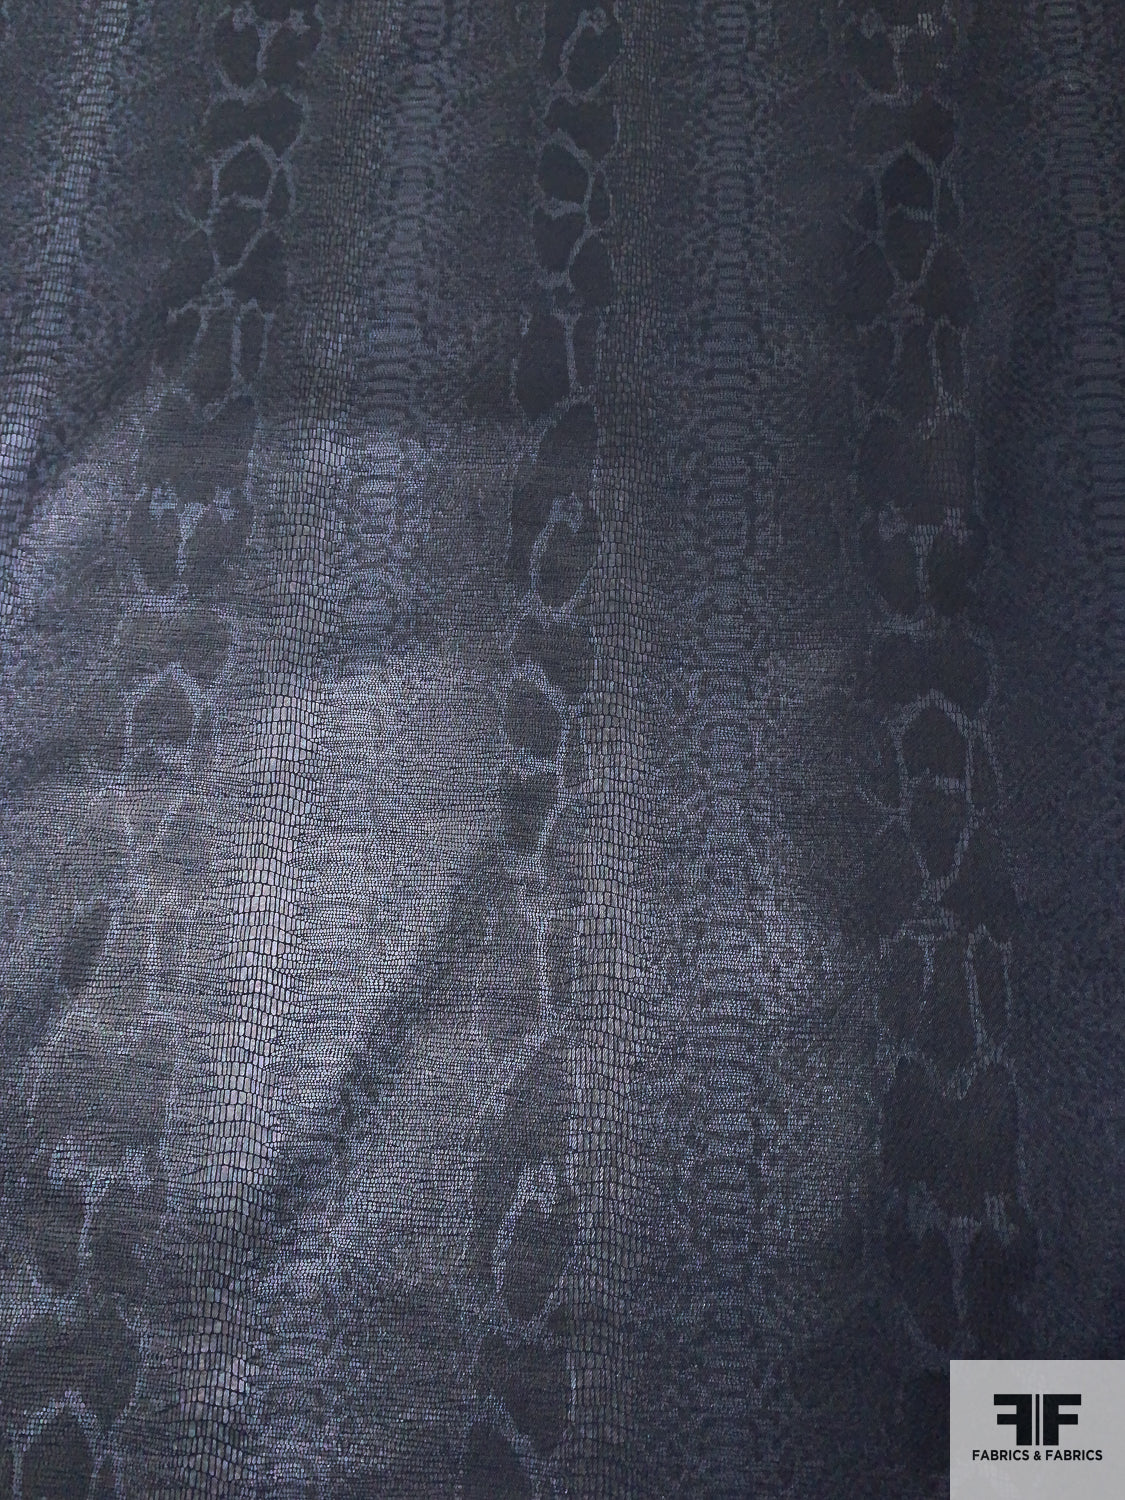 Snakeskin Pattern Printed High-Sheen Stretch Fine Cotton Denim- Midnight Navy